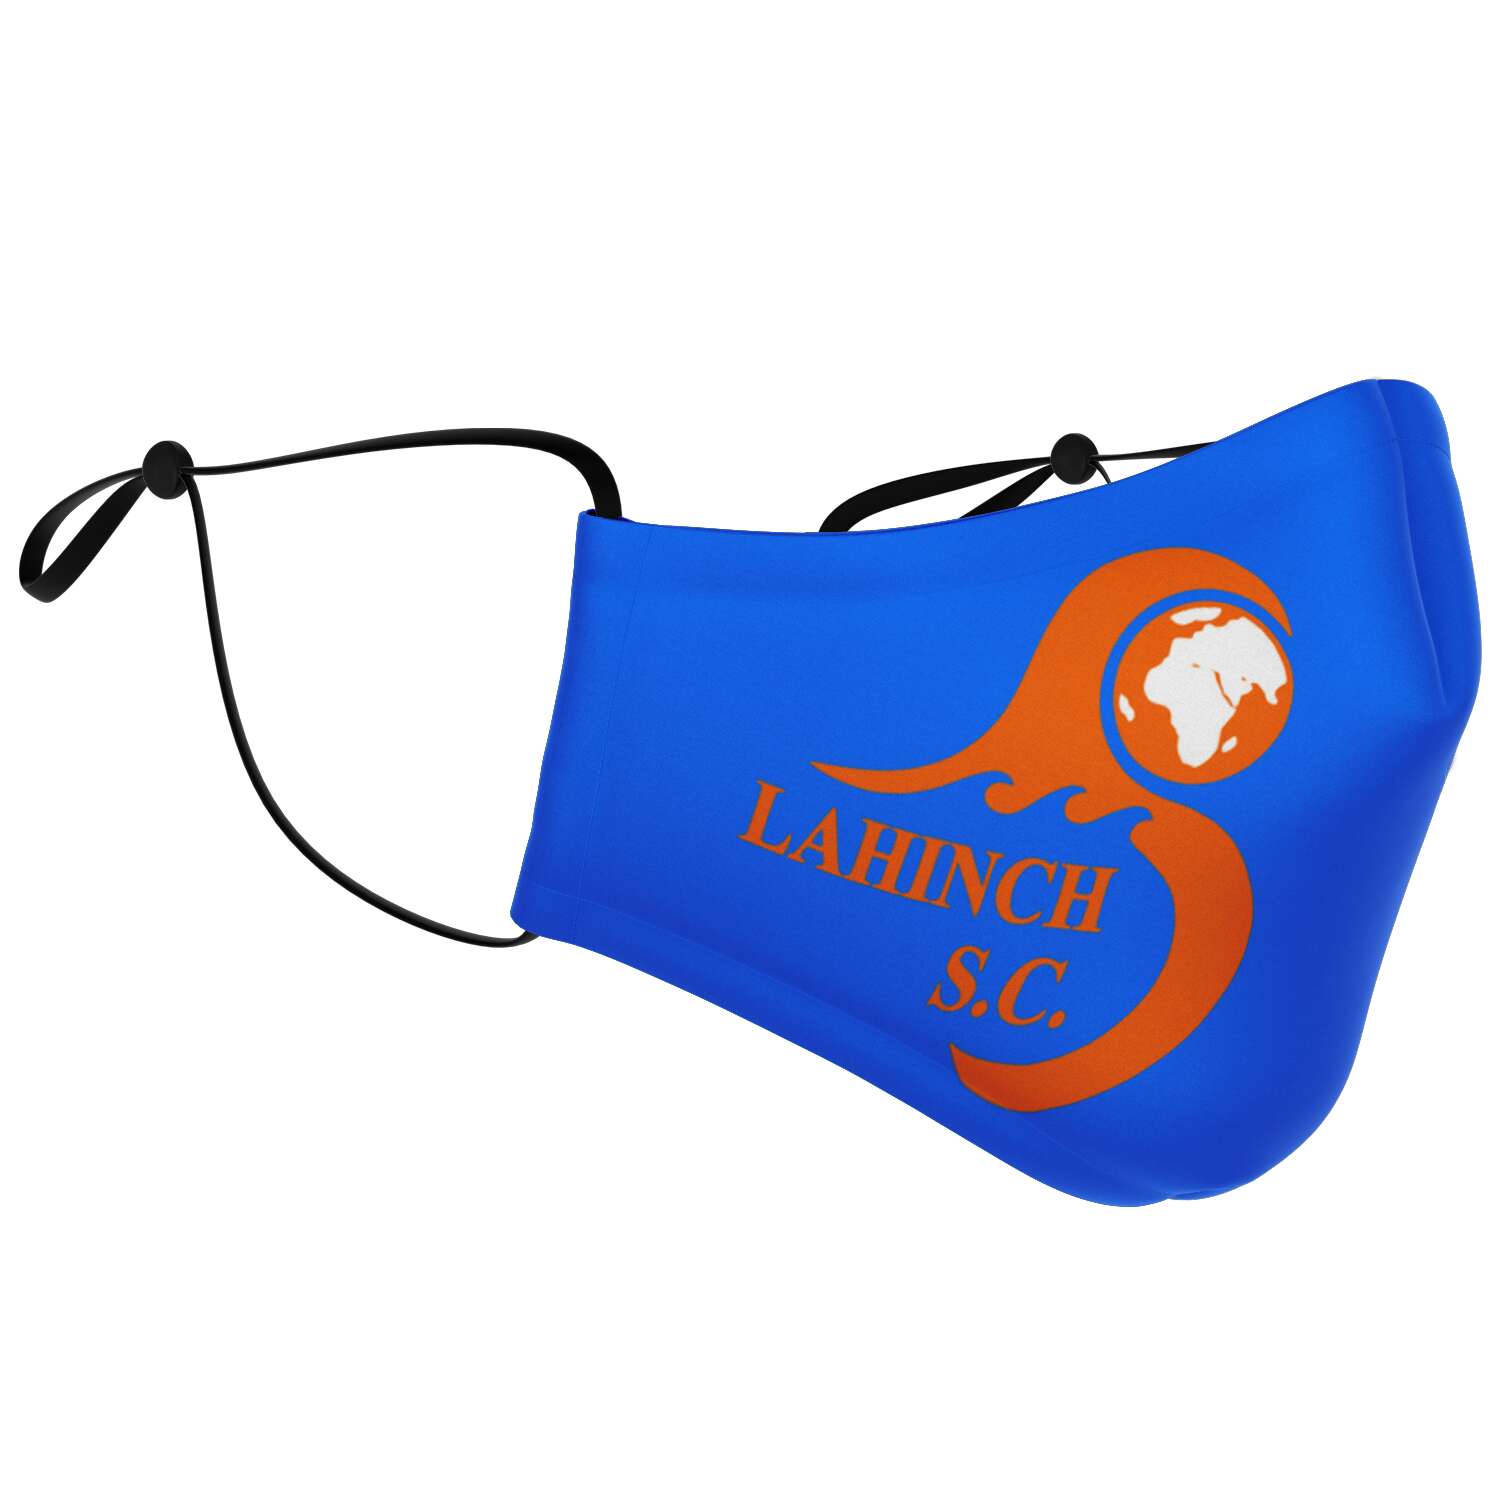 Lahinch swim club mask